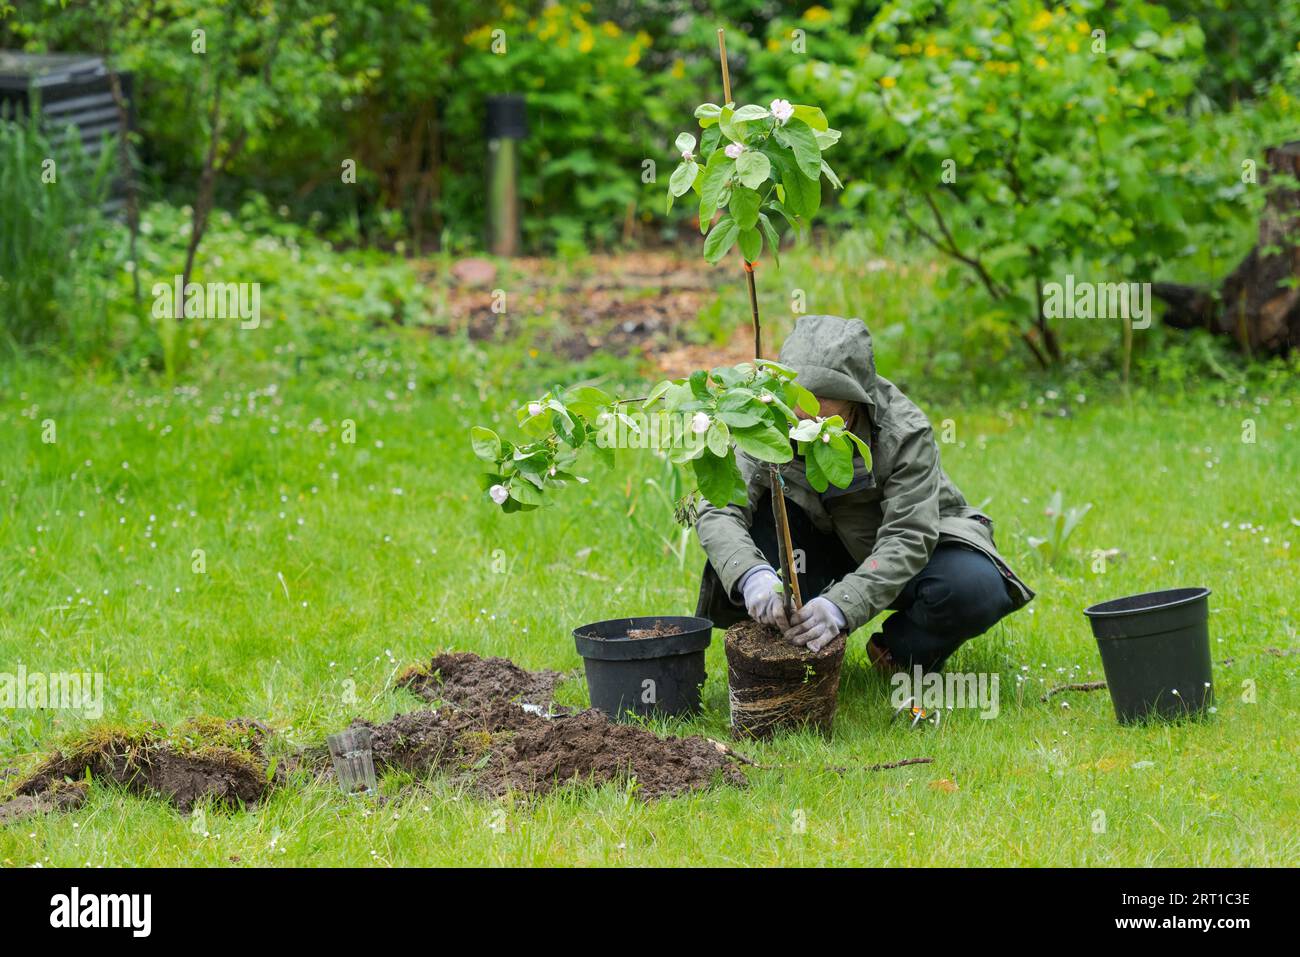 Eine Person im Garten, die während des Regens einen kleinen Quitten-Baum inmitten des Rasens pflanzt Stockfoto